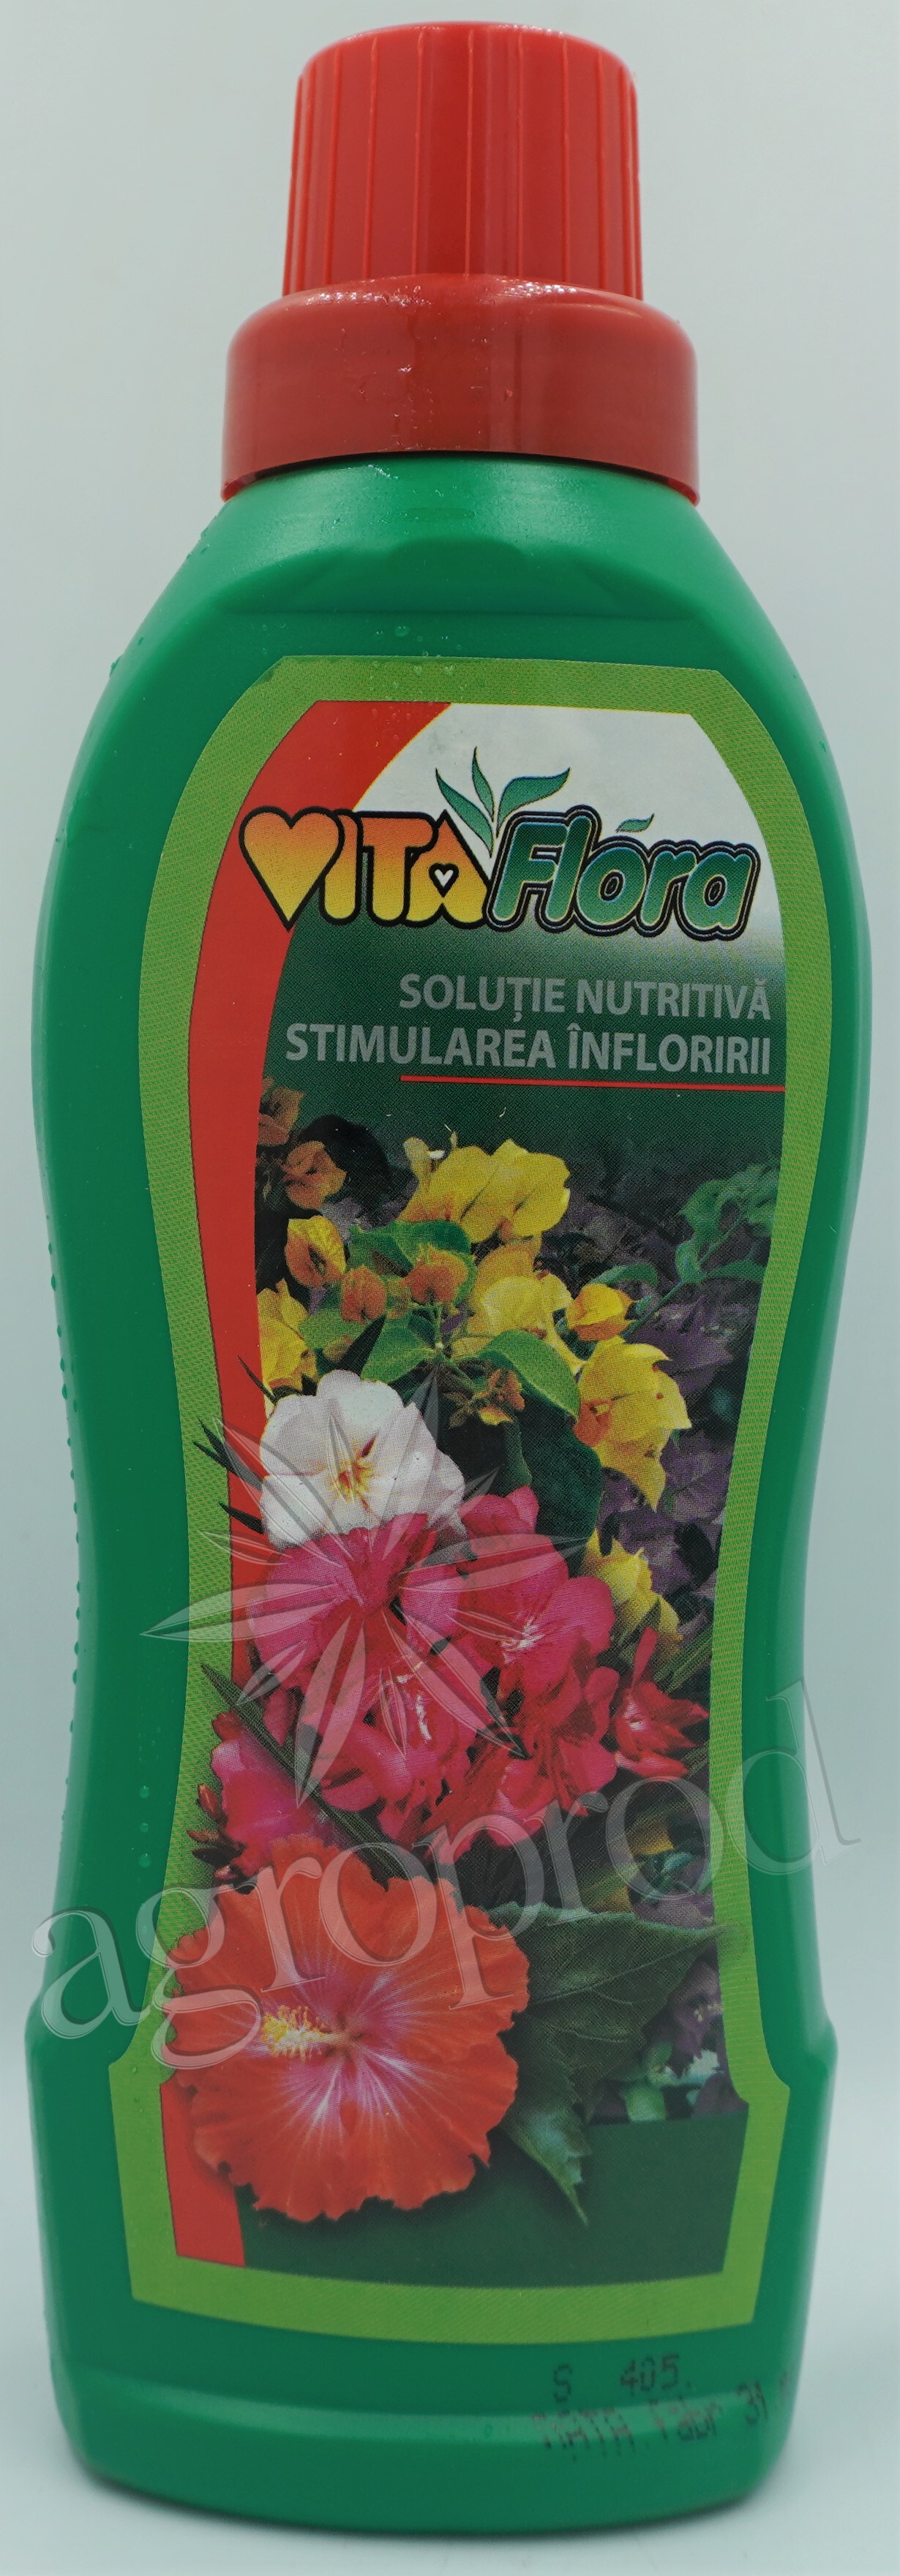 Vitaflora pentru stimularea infloririi 500ml